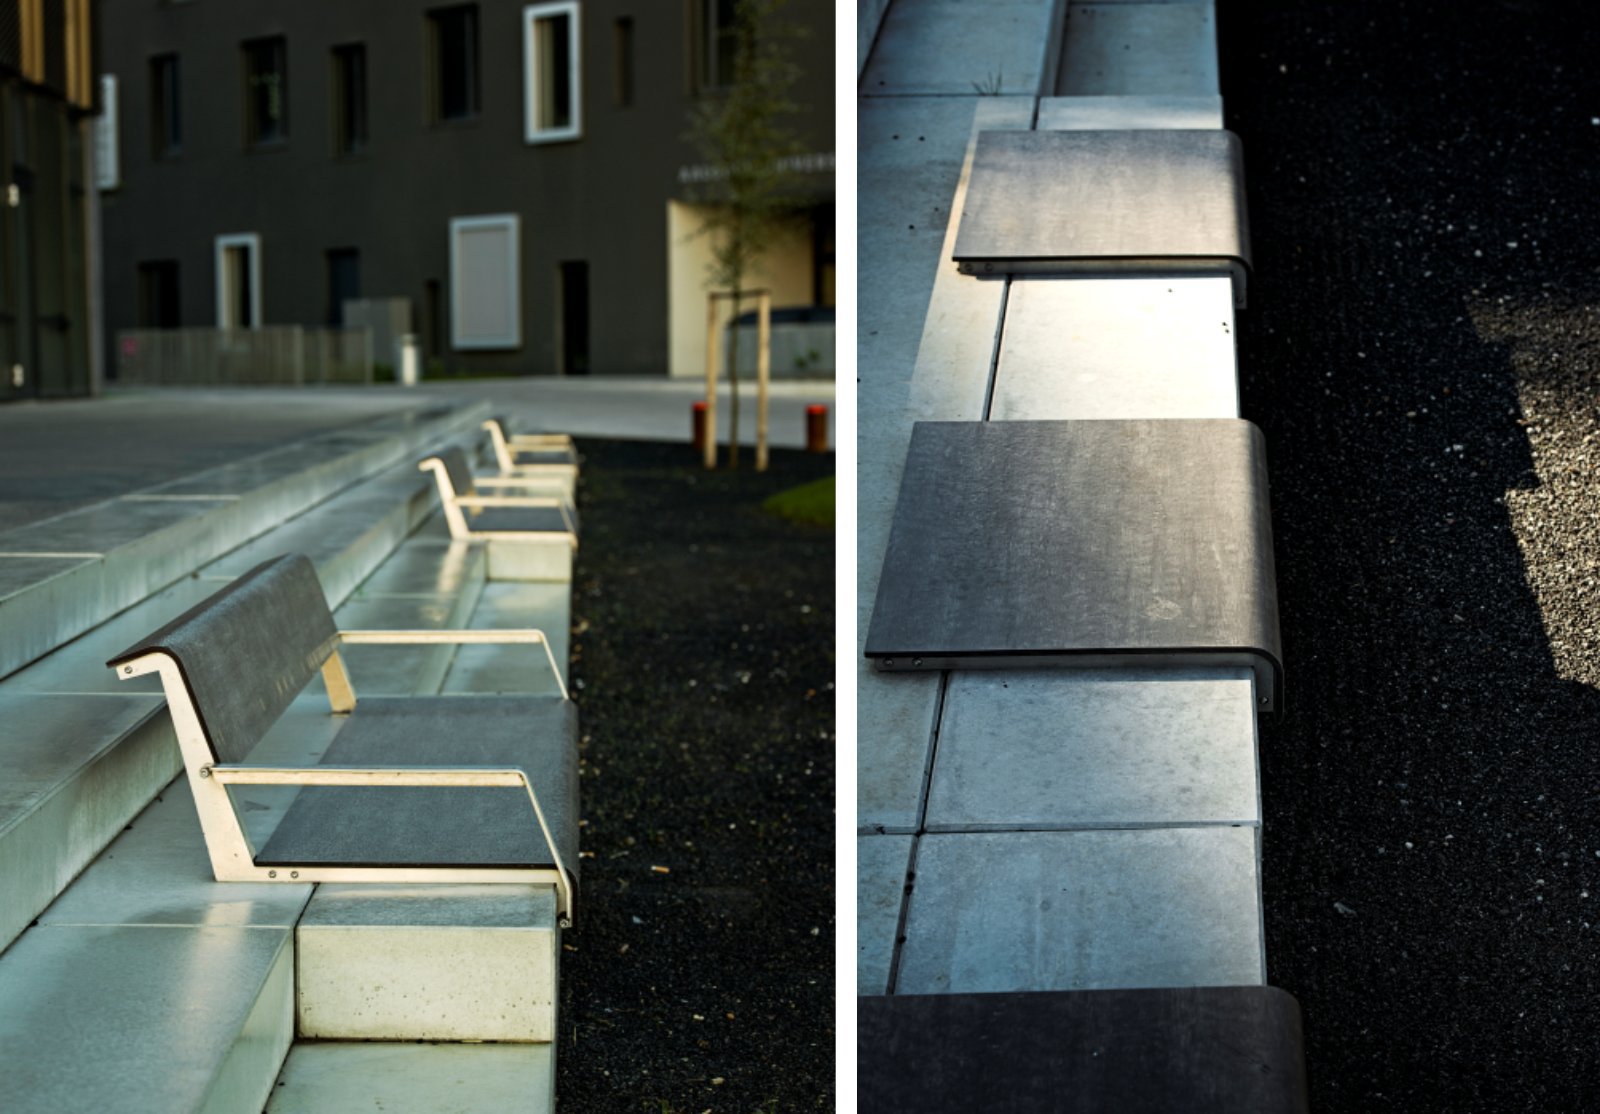 گالری عکس 10 تکمیل اسکله آلبورگ دانمارک توسط شرکت C F Moller  عکس بازسازی عکس شهرسازی عکس طراحی شهری عکس محوطه سازی عکس معماری دانمارک عکس معماری شهری